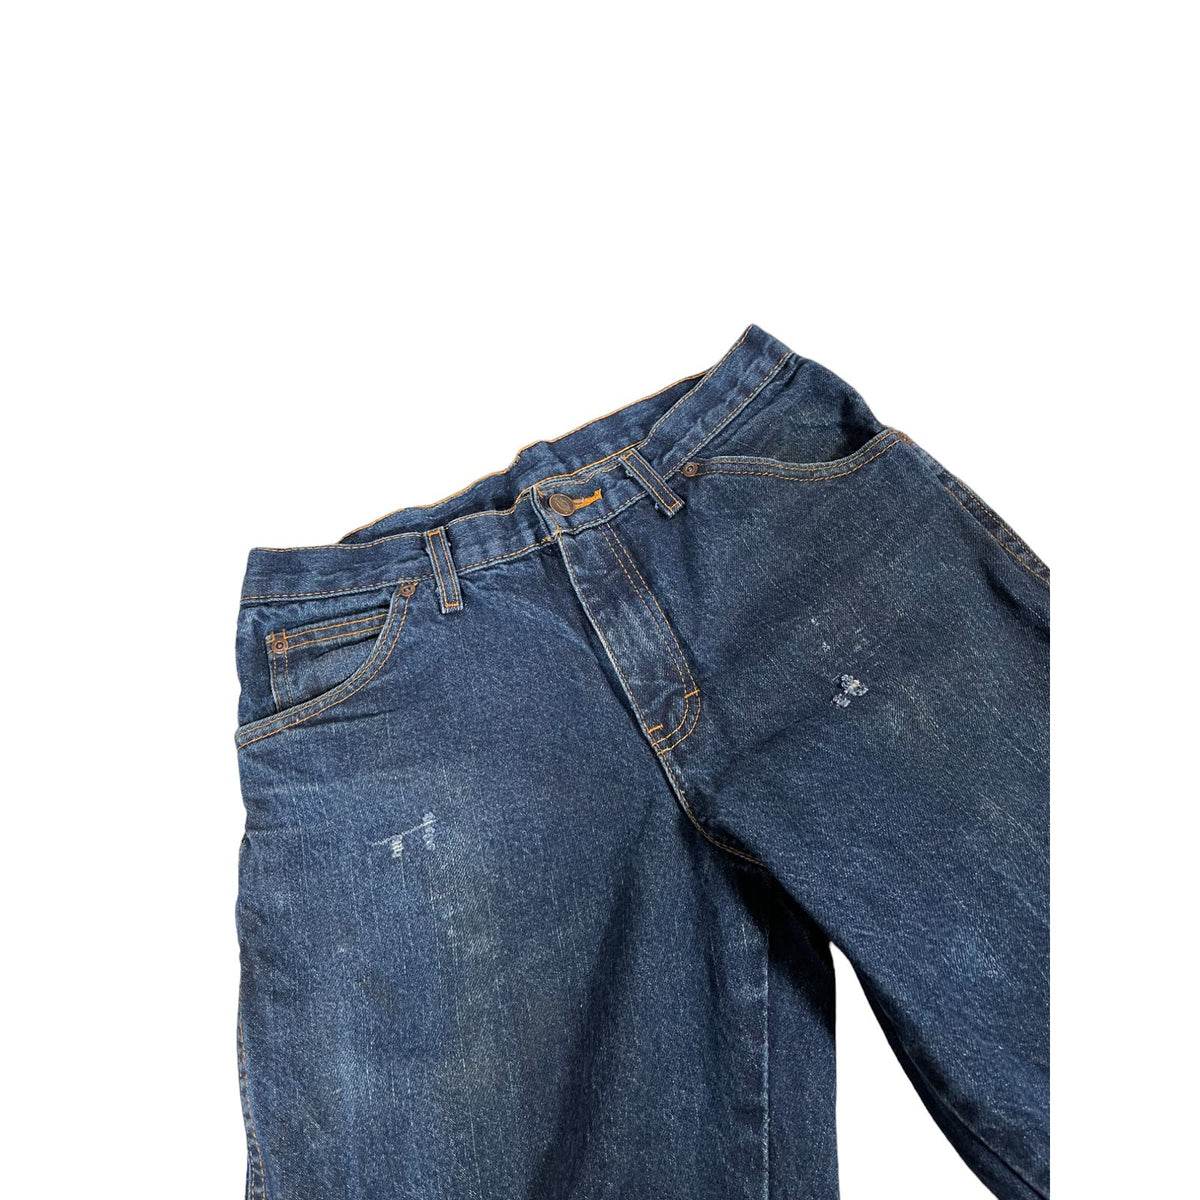 Vintage Dickies Distressed Indigo Denim Jeans 30x32